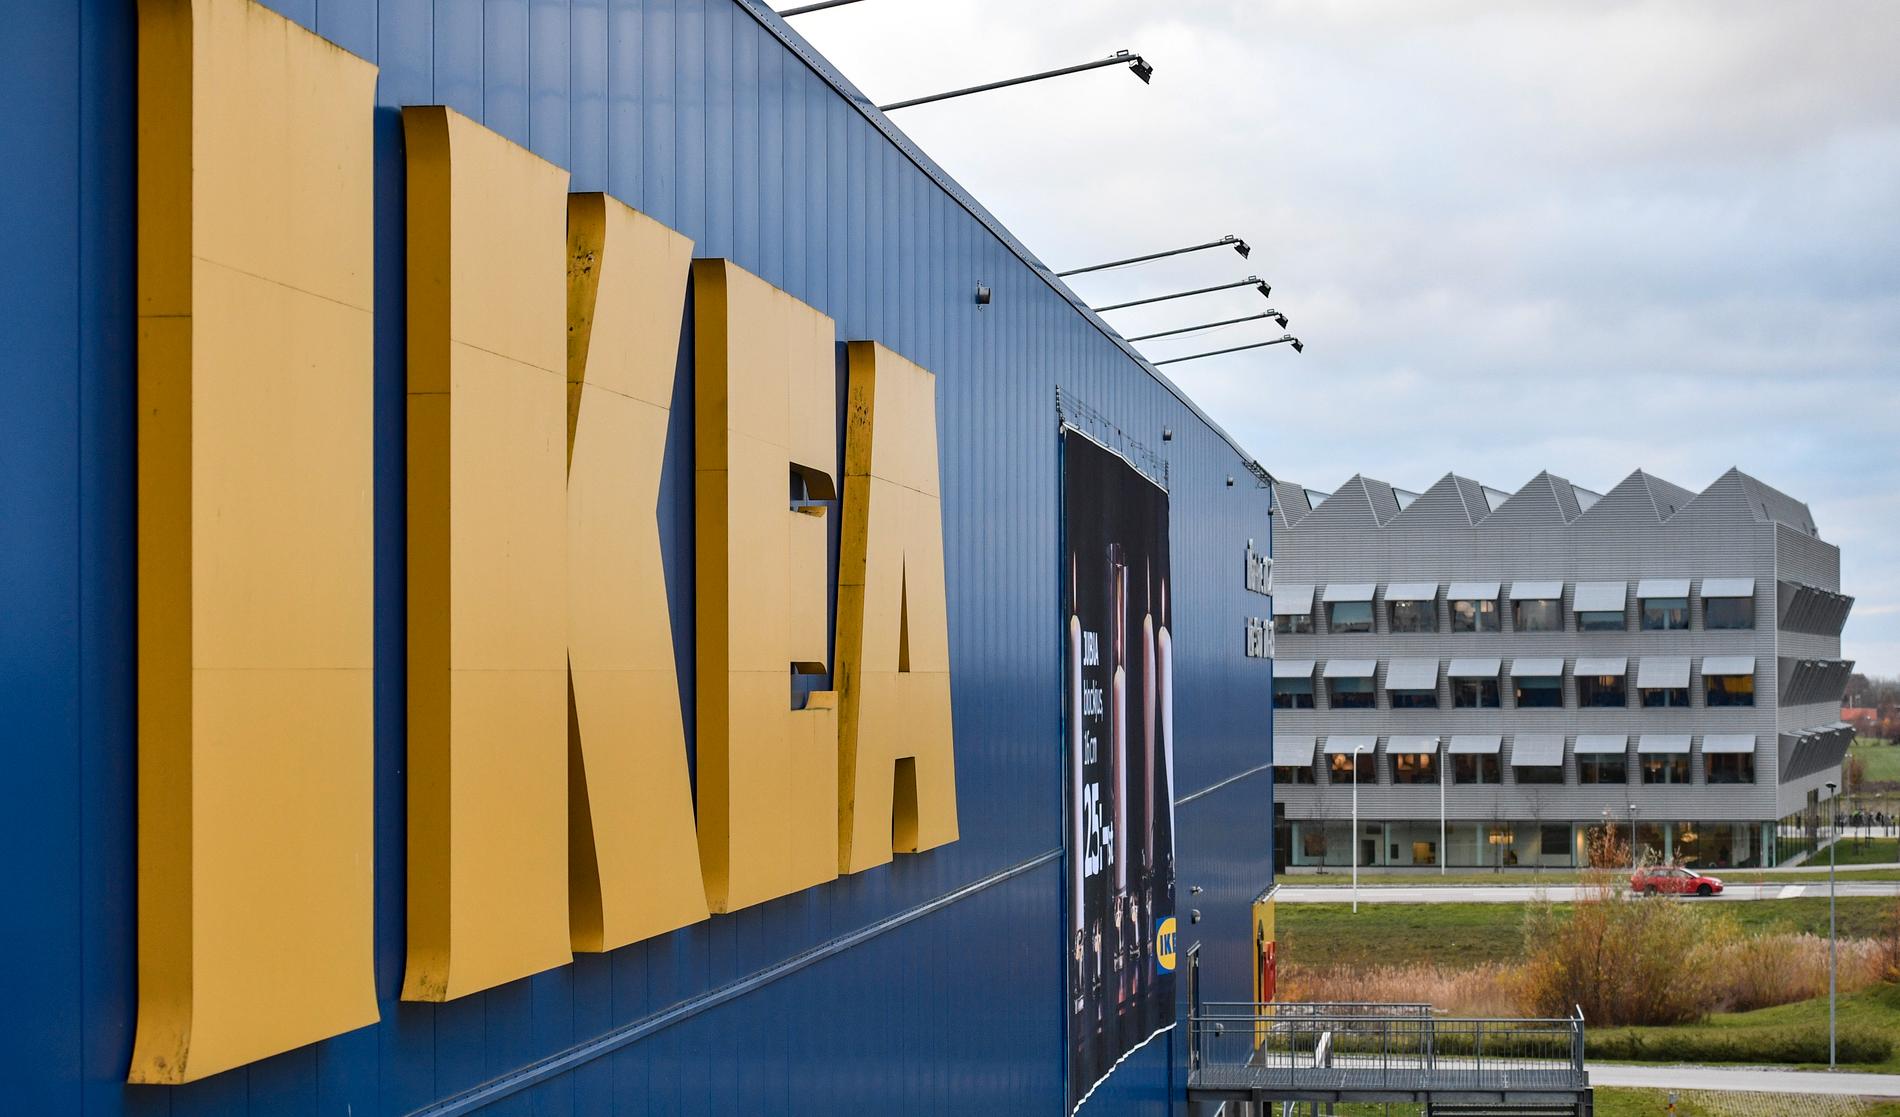 Ikea-varuhuset i Svågertorp med kontorsbyggnaden Ikea Hubhult i bakgrunden. Ikea Hubhult är hem för Ingka Global, som driver majoriteten av världens Ikea-varuhus.